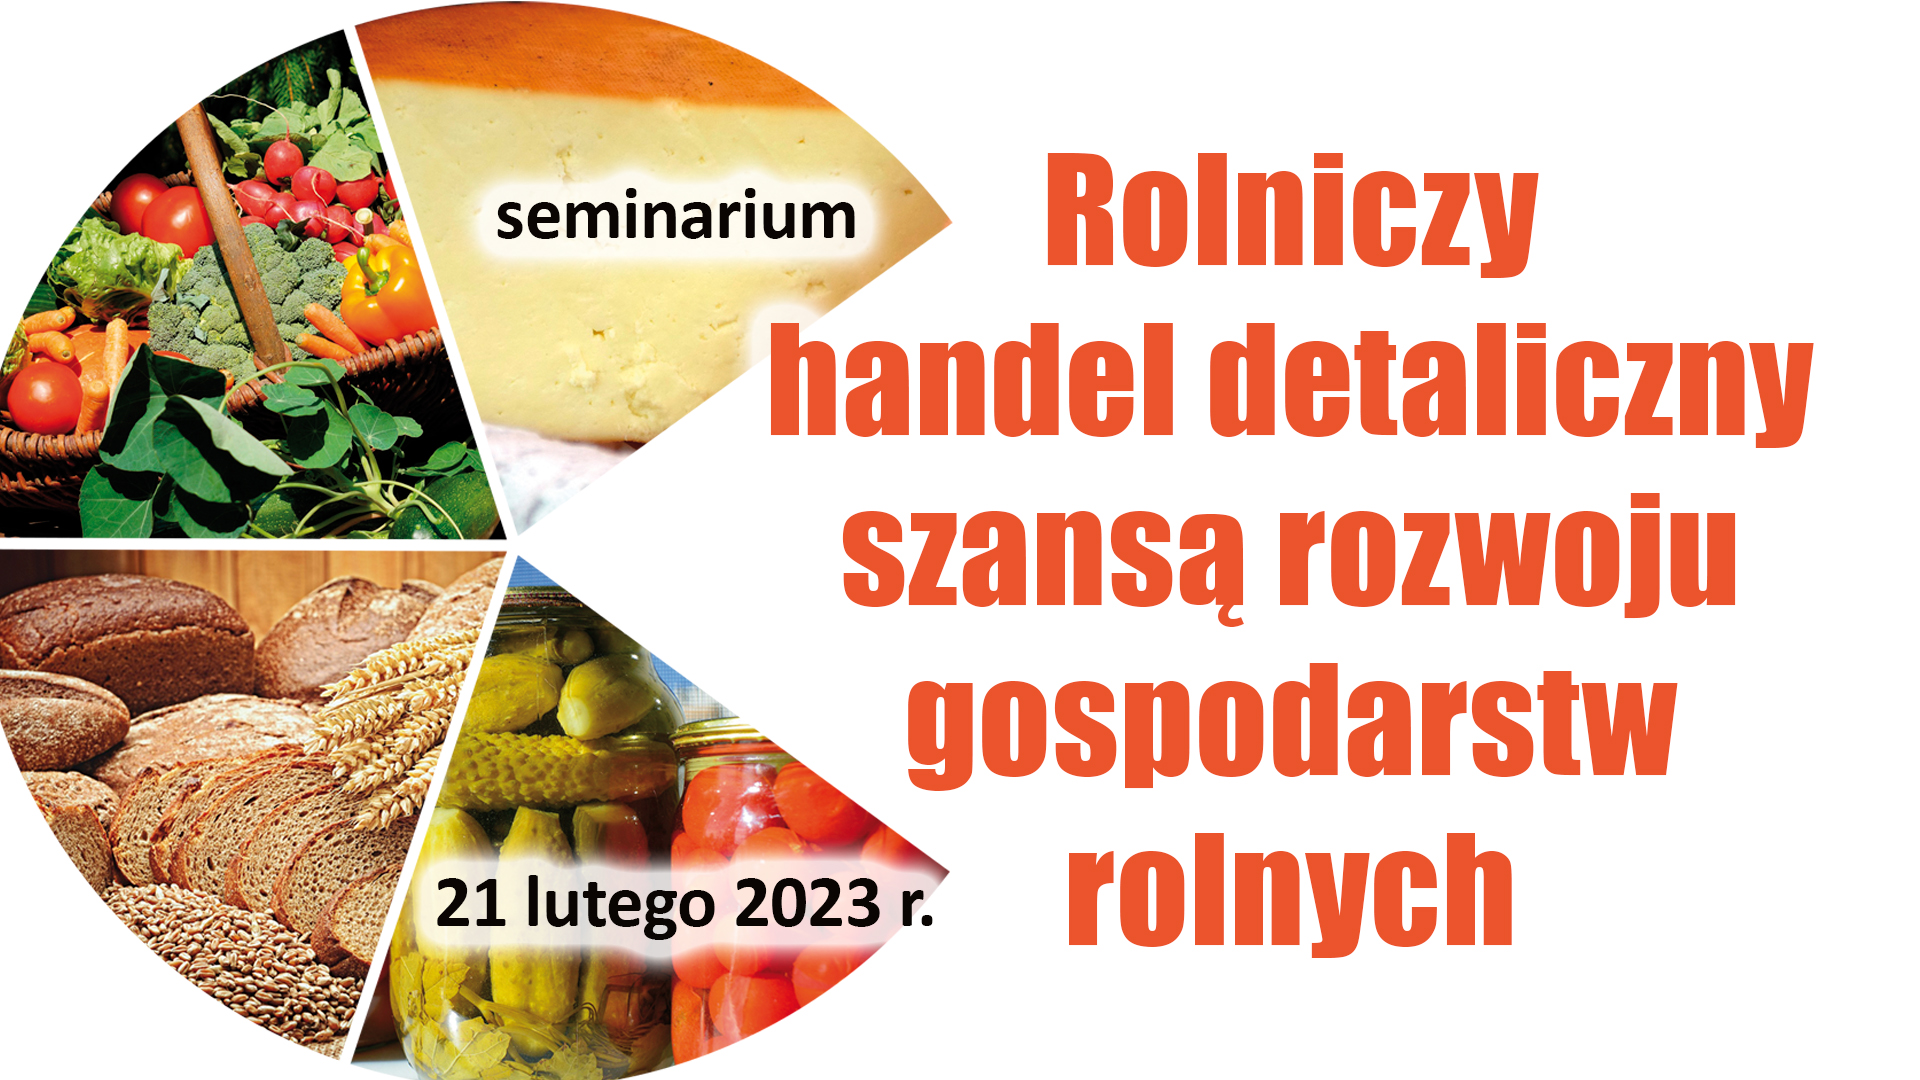 Seminarium pn. "Rolniczy handel detaliczny szansą rozwoju gospodarstw rolnych" - 21 lutego 2023 r.